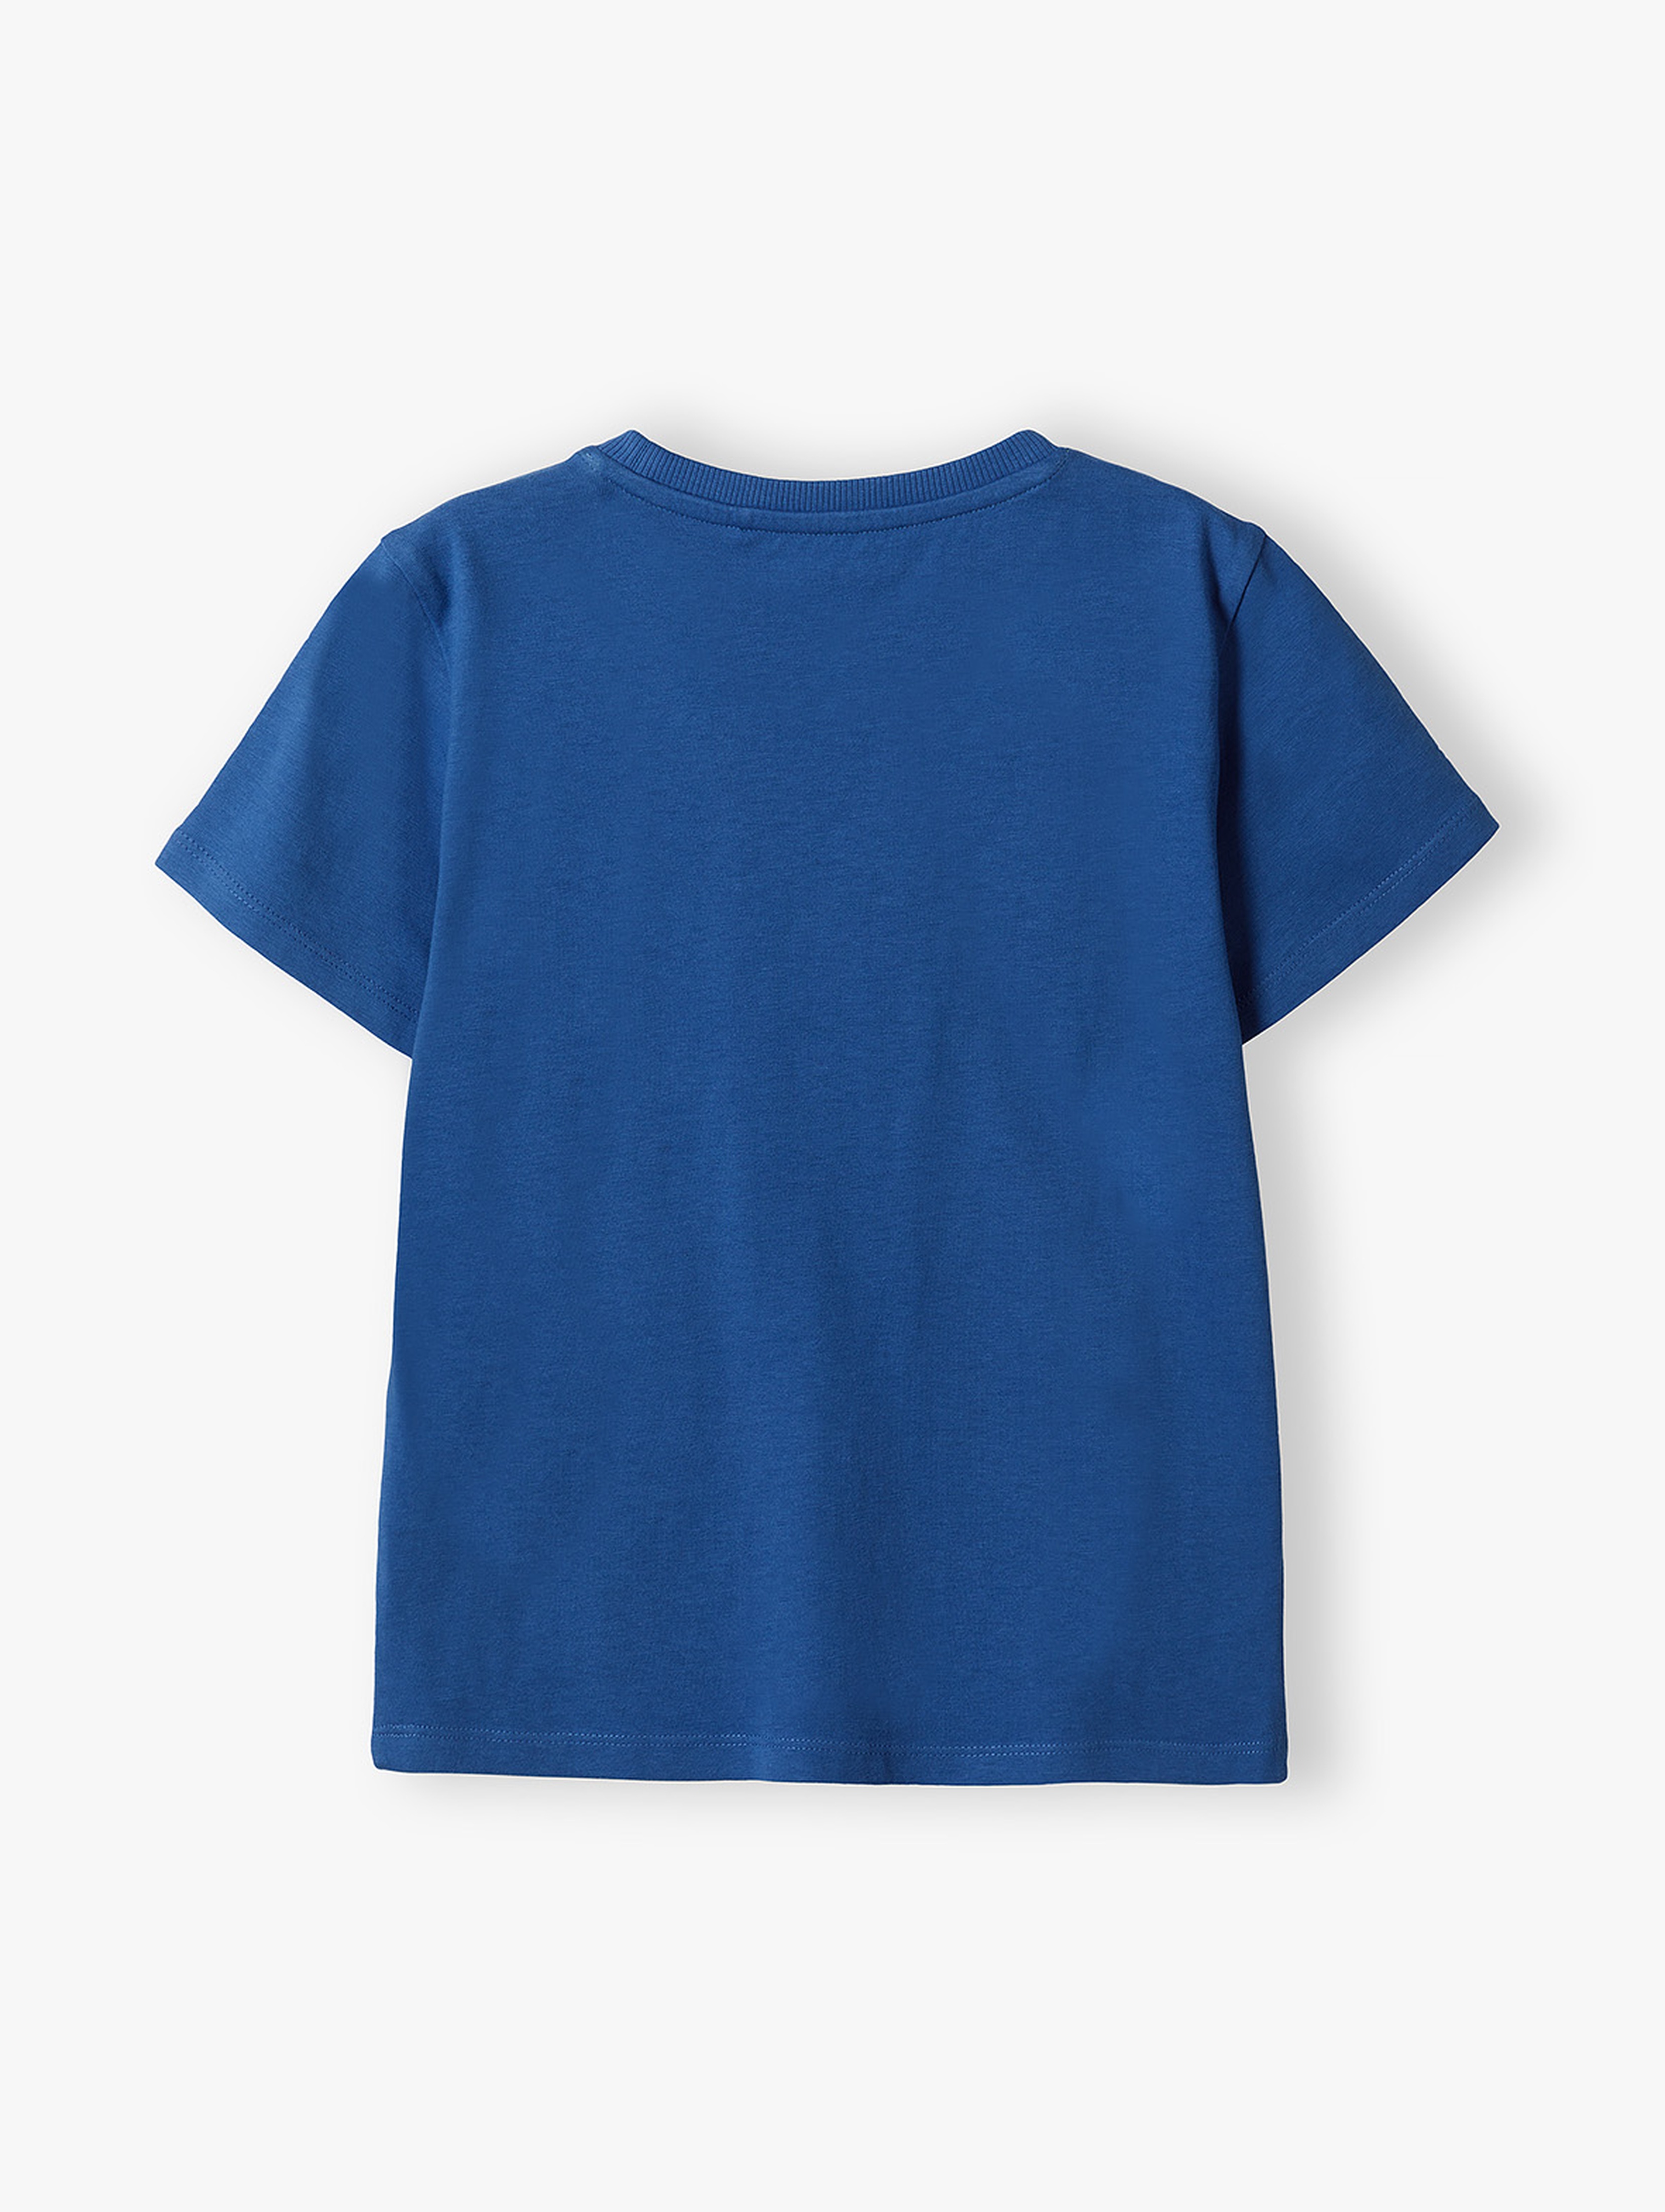 Niebieski t-shirt dla chłopca bawełniany z napisem- Everyday